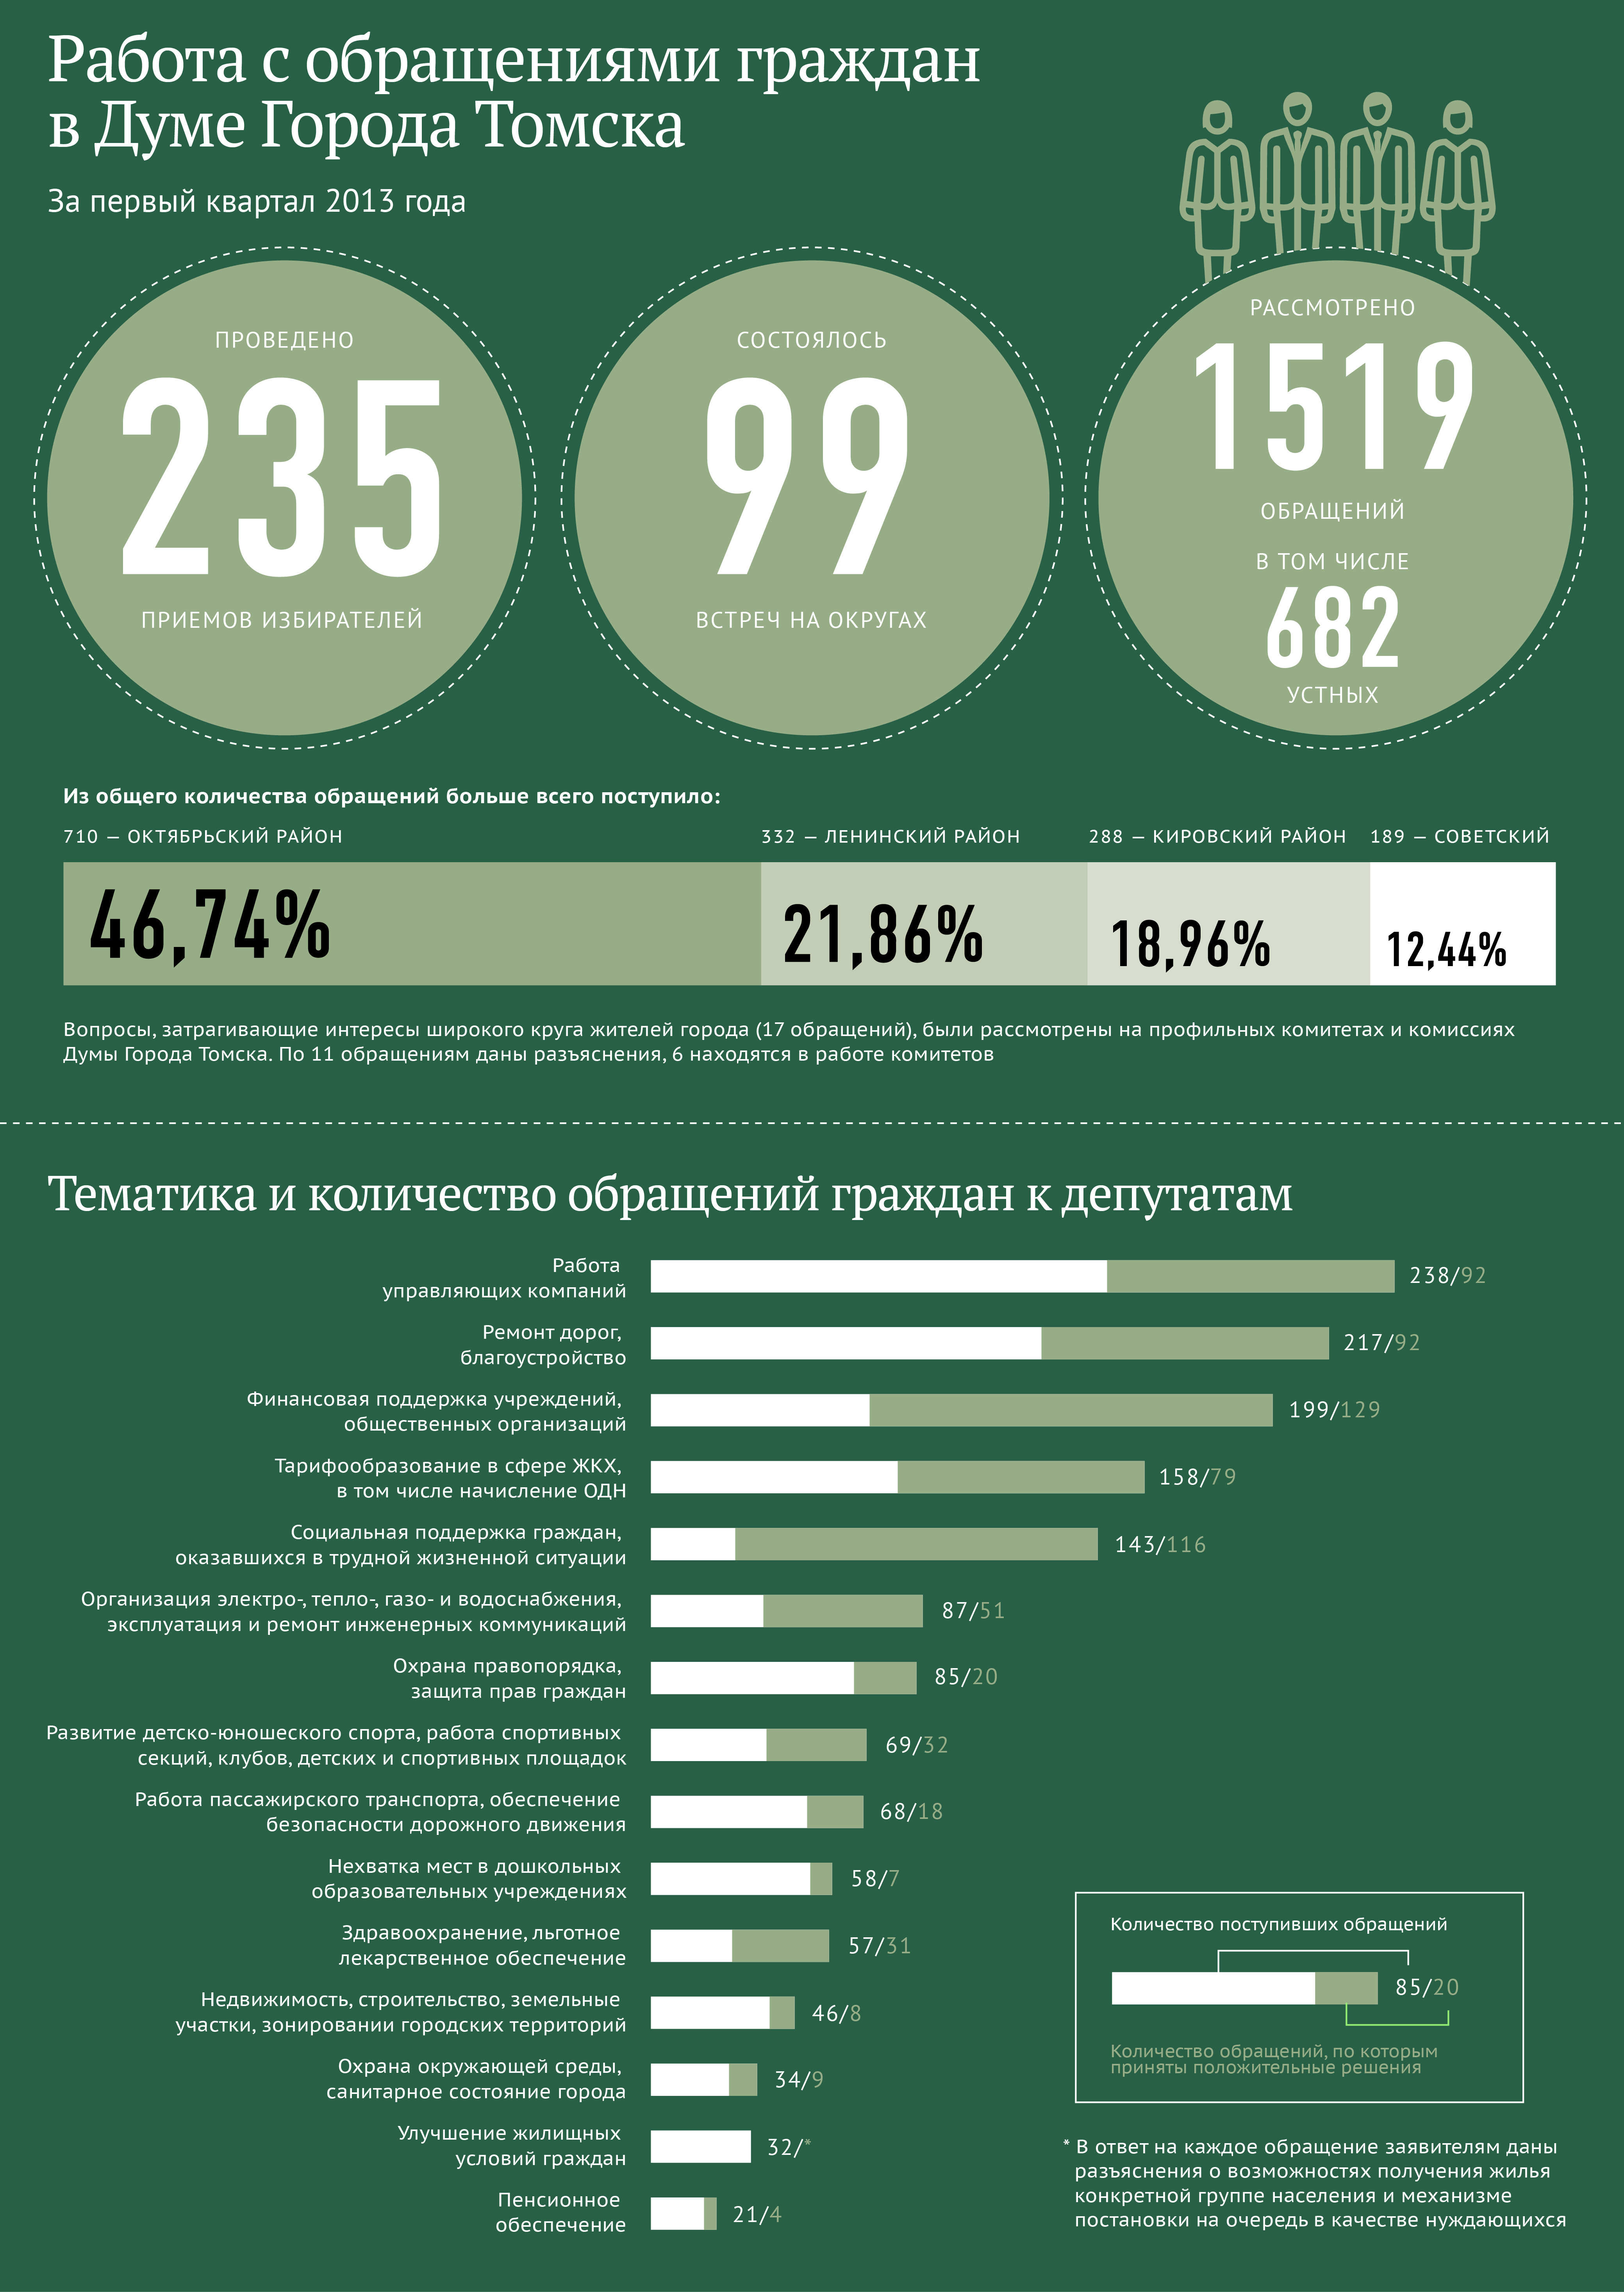 Работа с обращениями граждан в Думе города Томска I кв 2013 года